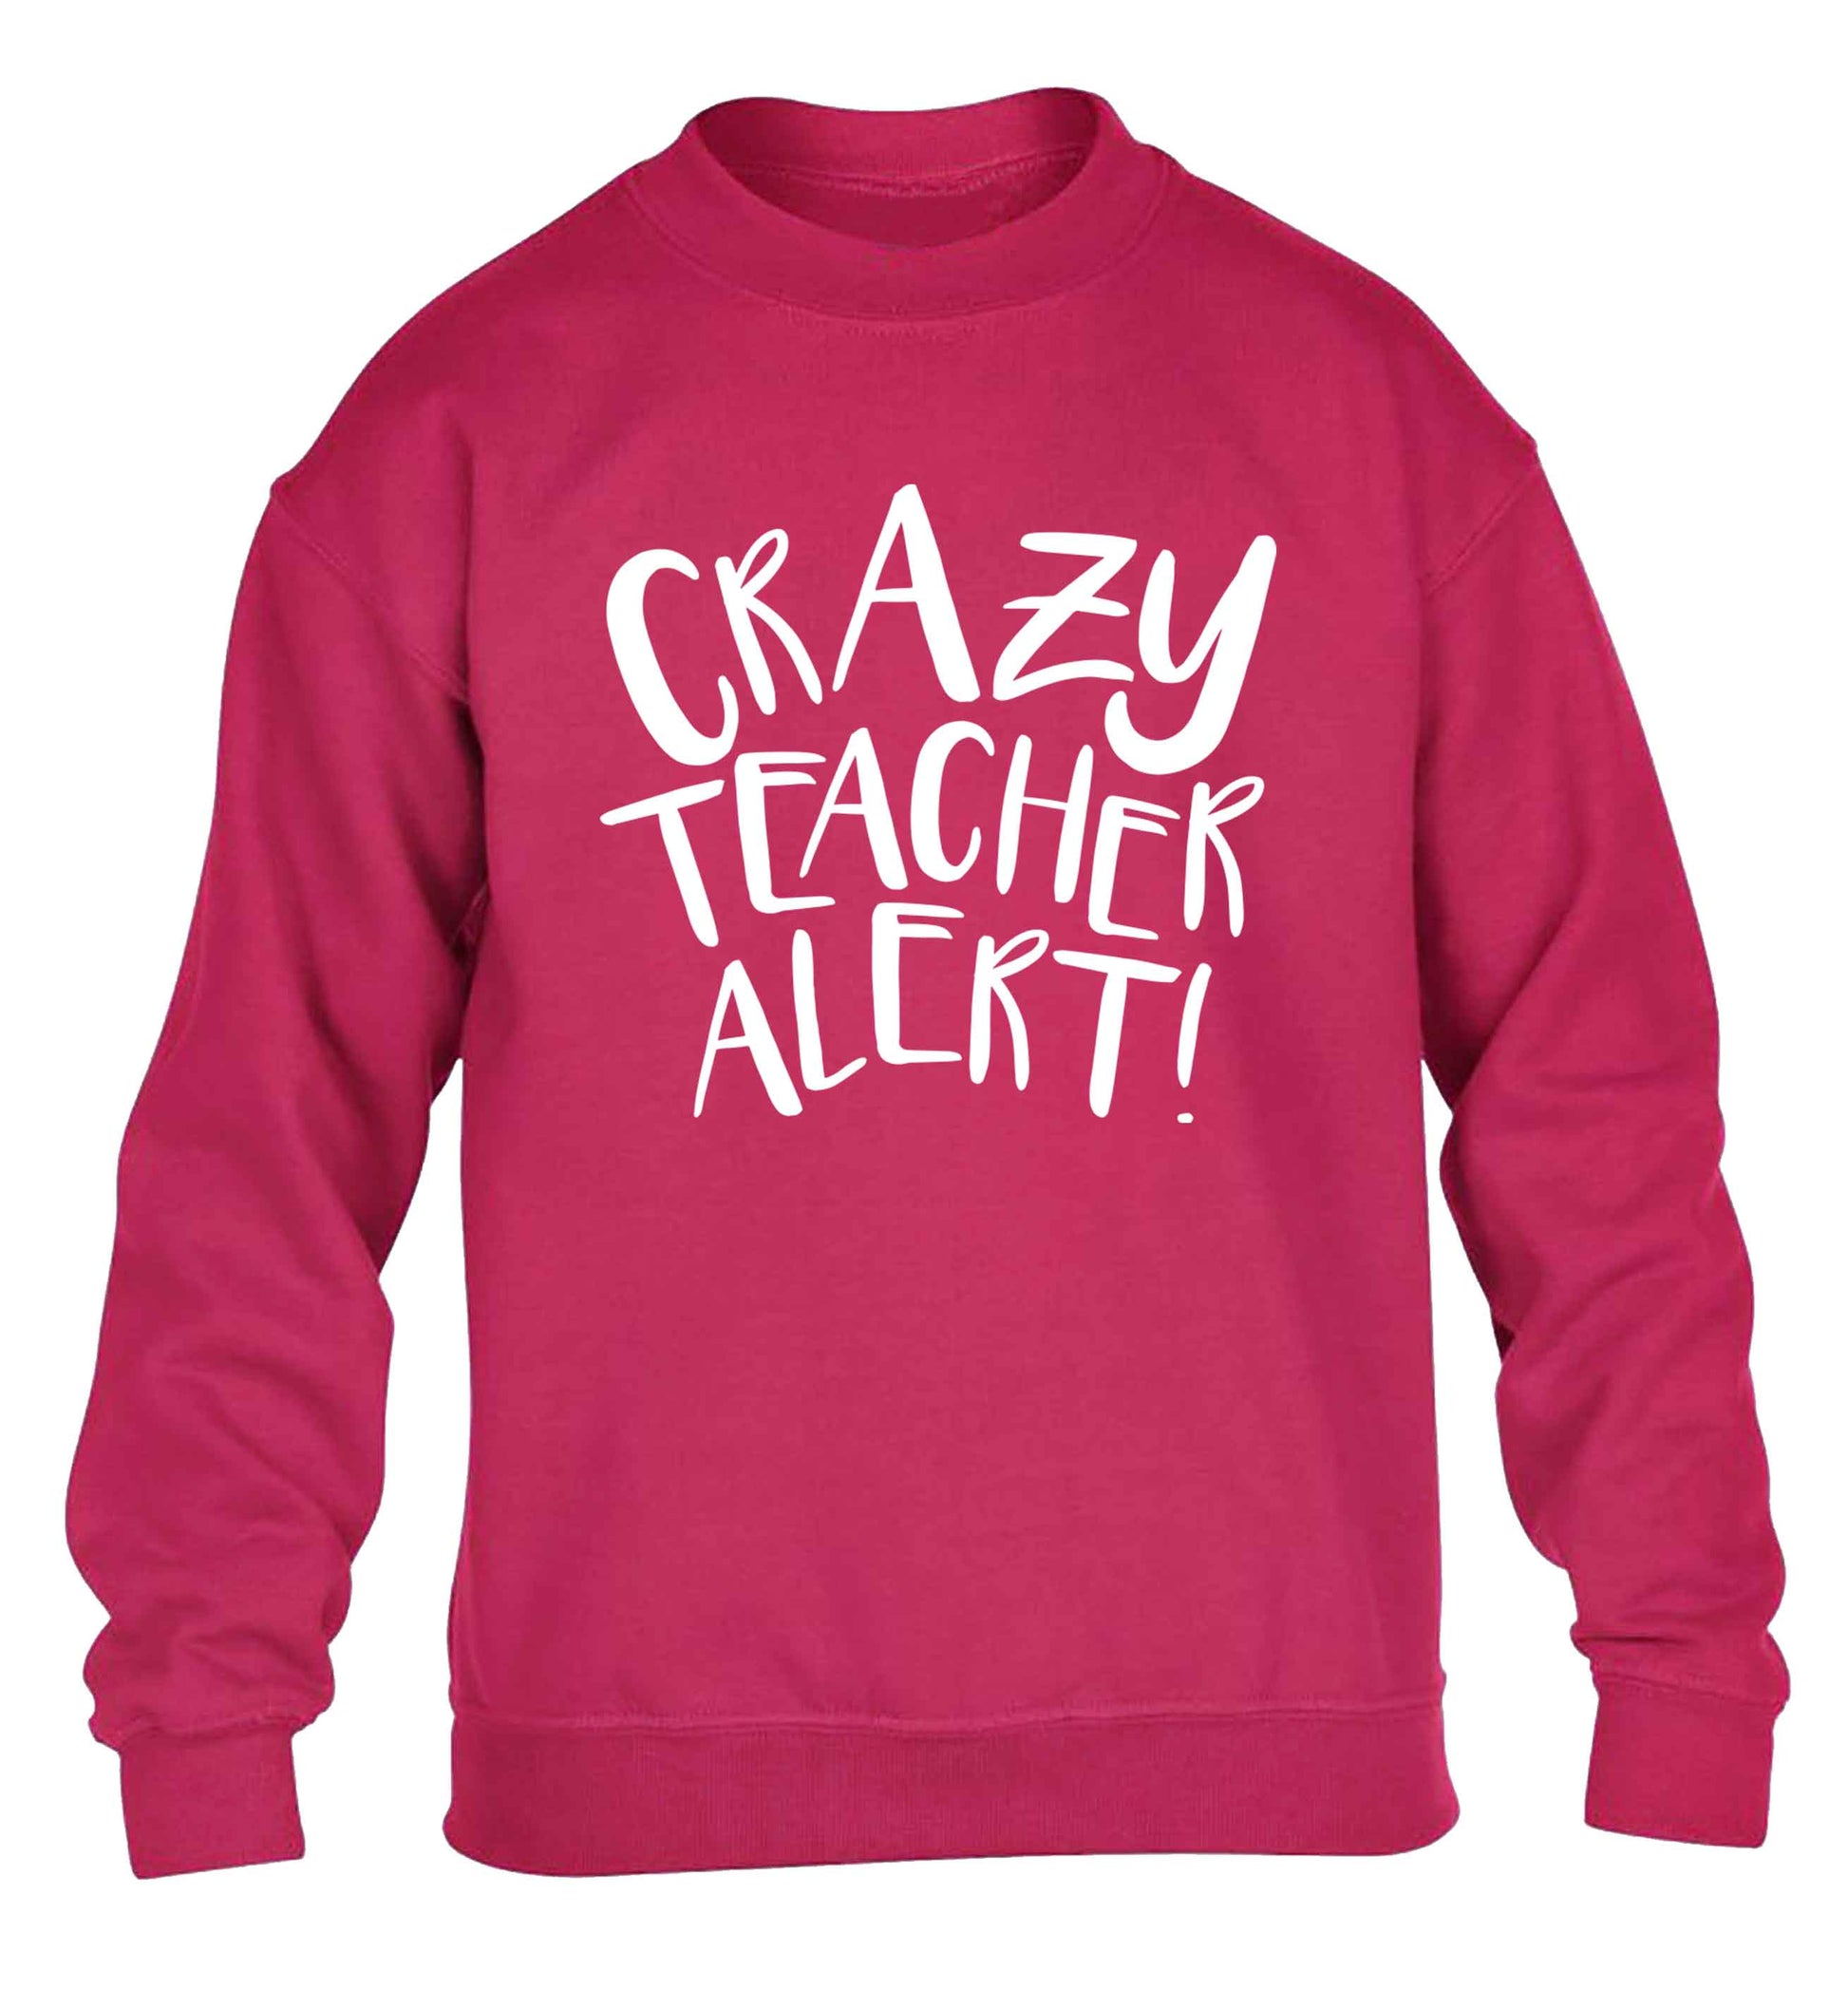 Crazy teacher alert children's pink sweater 12-13 Years